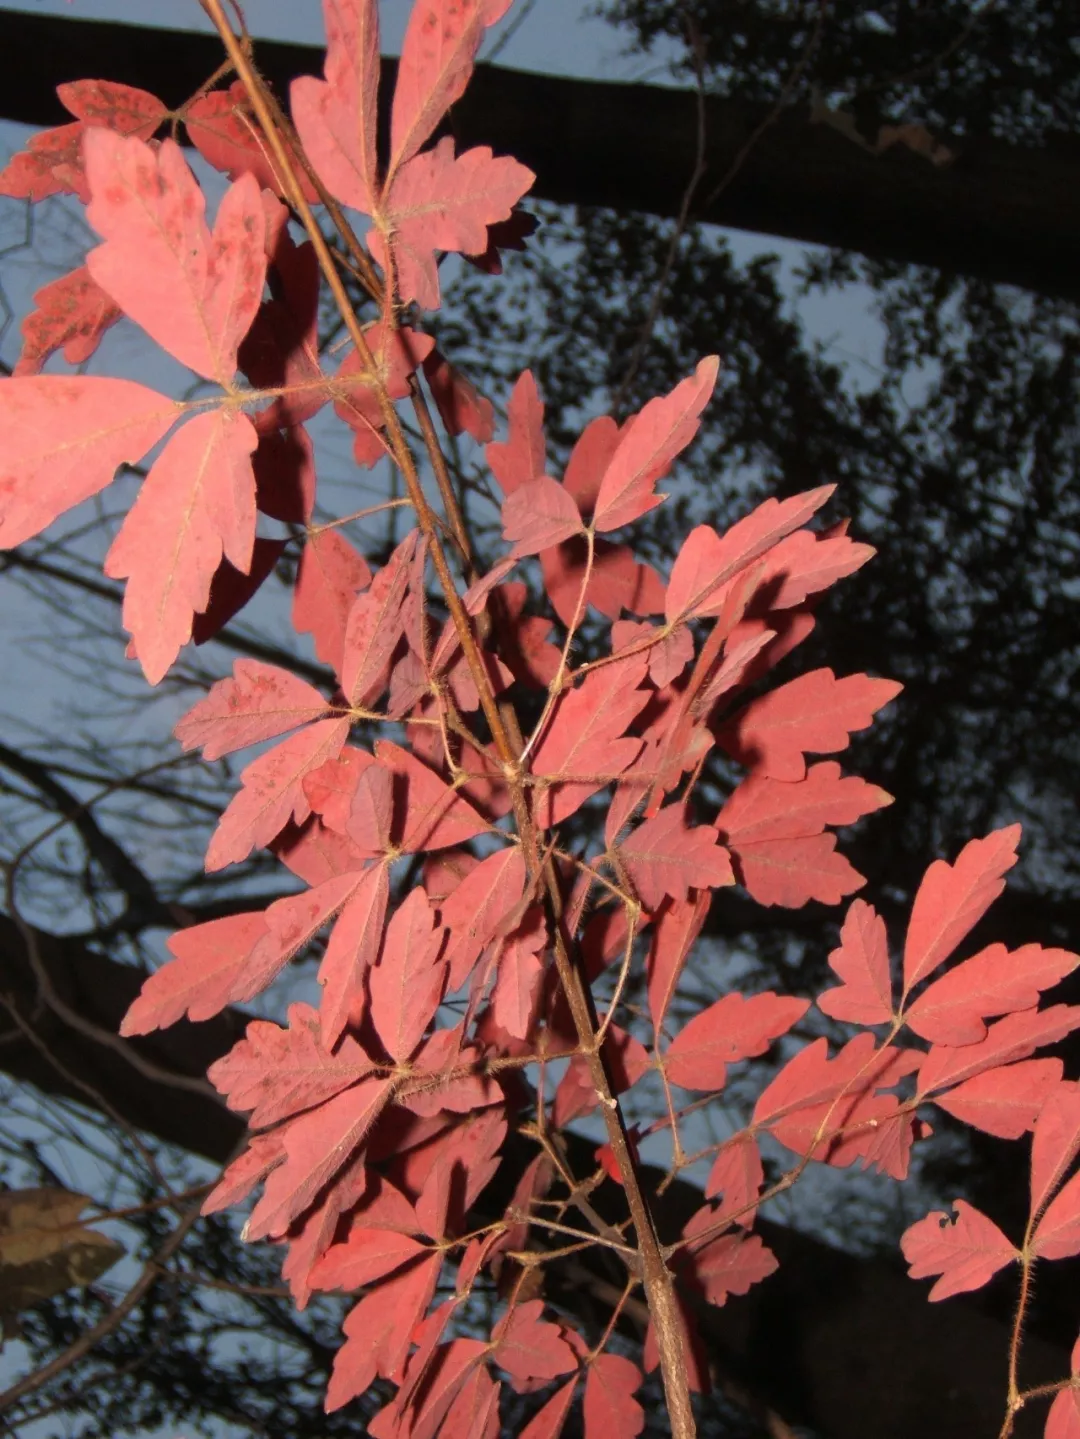 血皮槭树生长速度图片